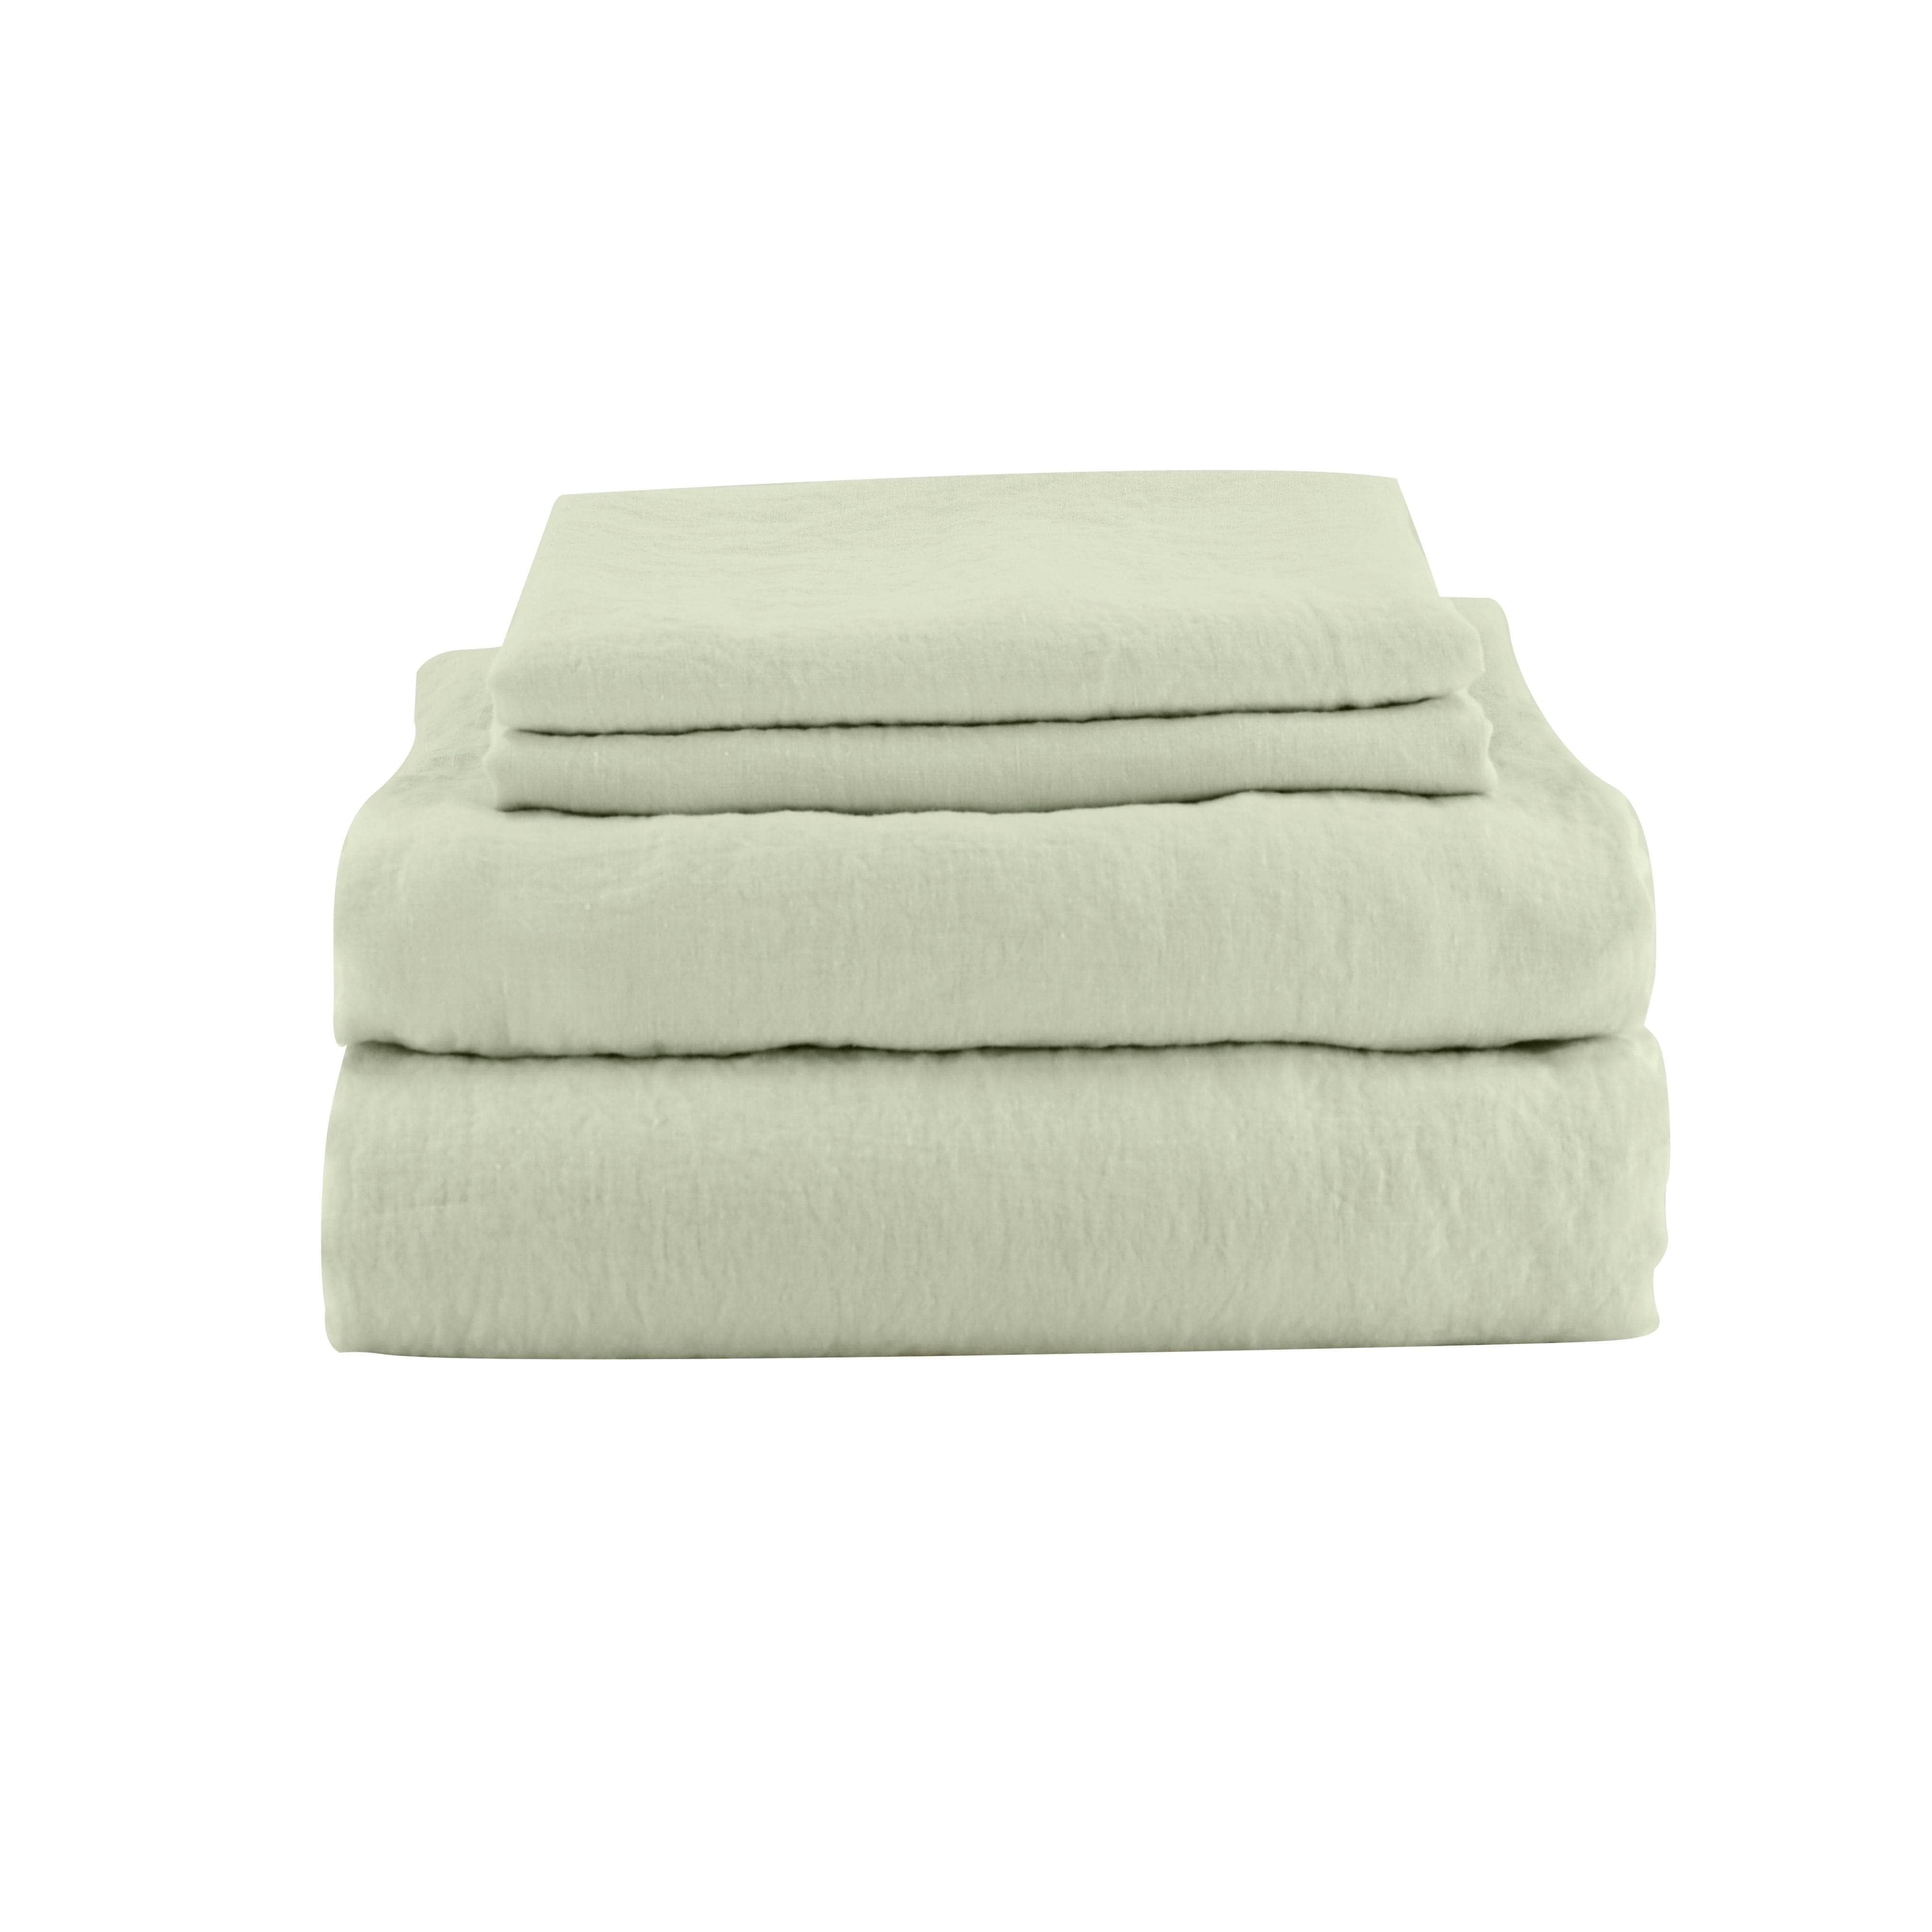 green linen sheet set including 2 pillowcases  1 flat sheet 1 fitted sheet